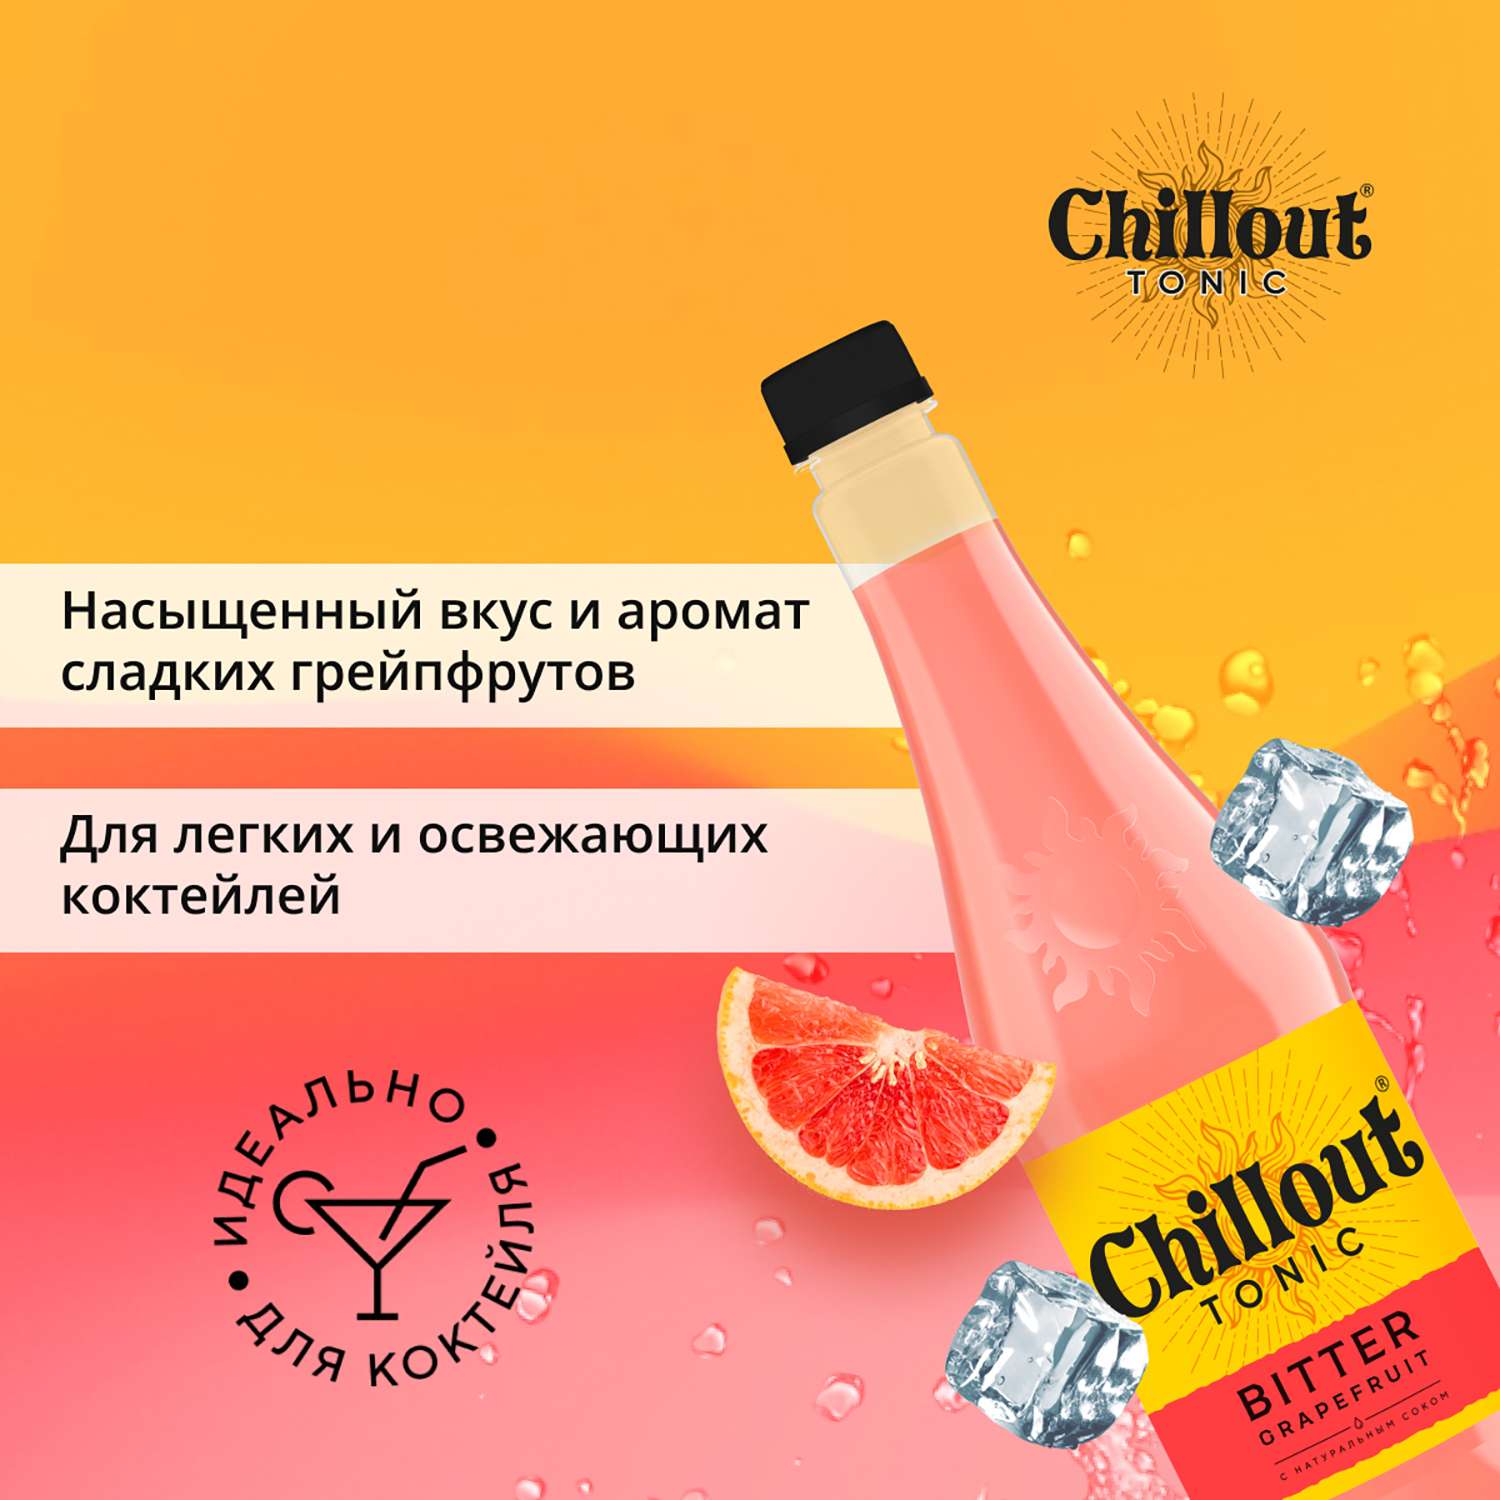 Тоник Chillout газированный Биттер грейпфрут 0.9л - фото 4